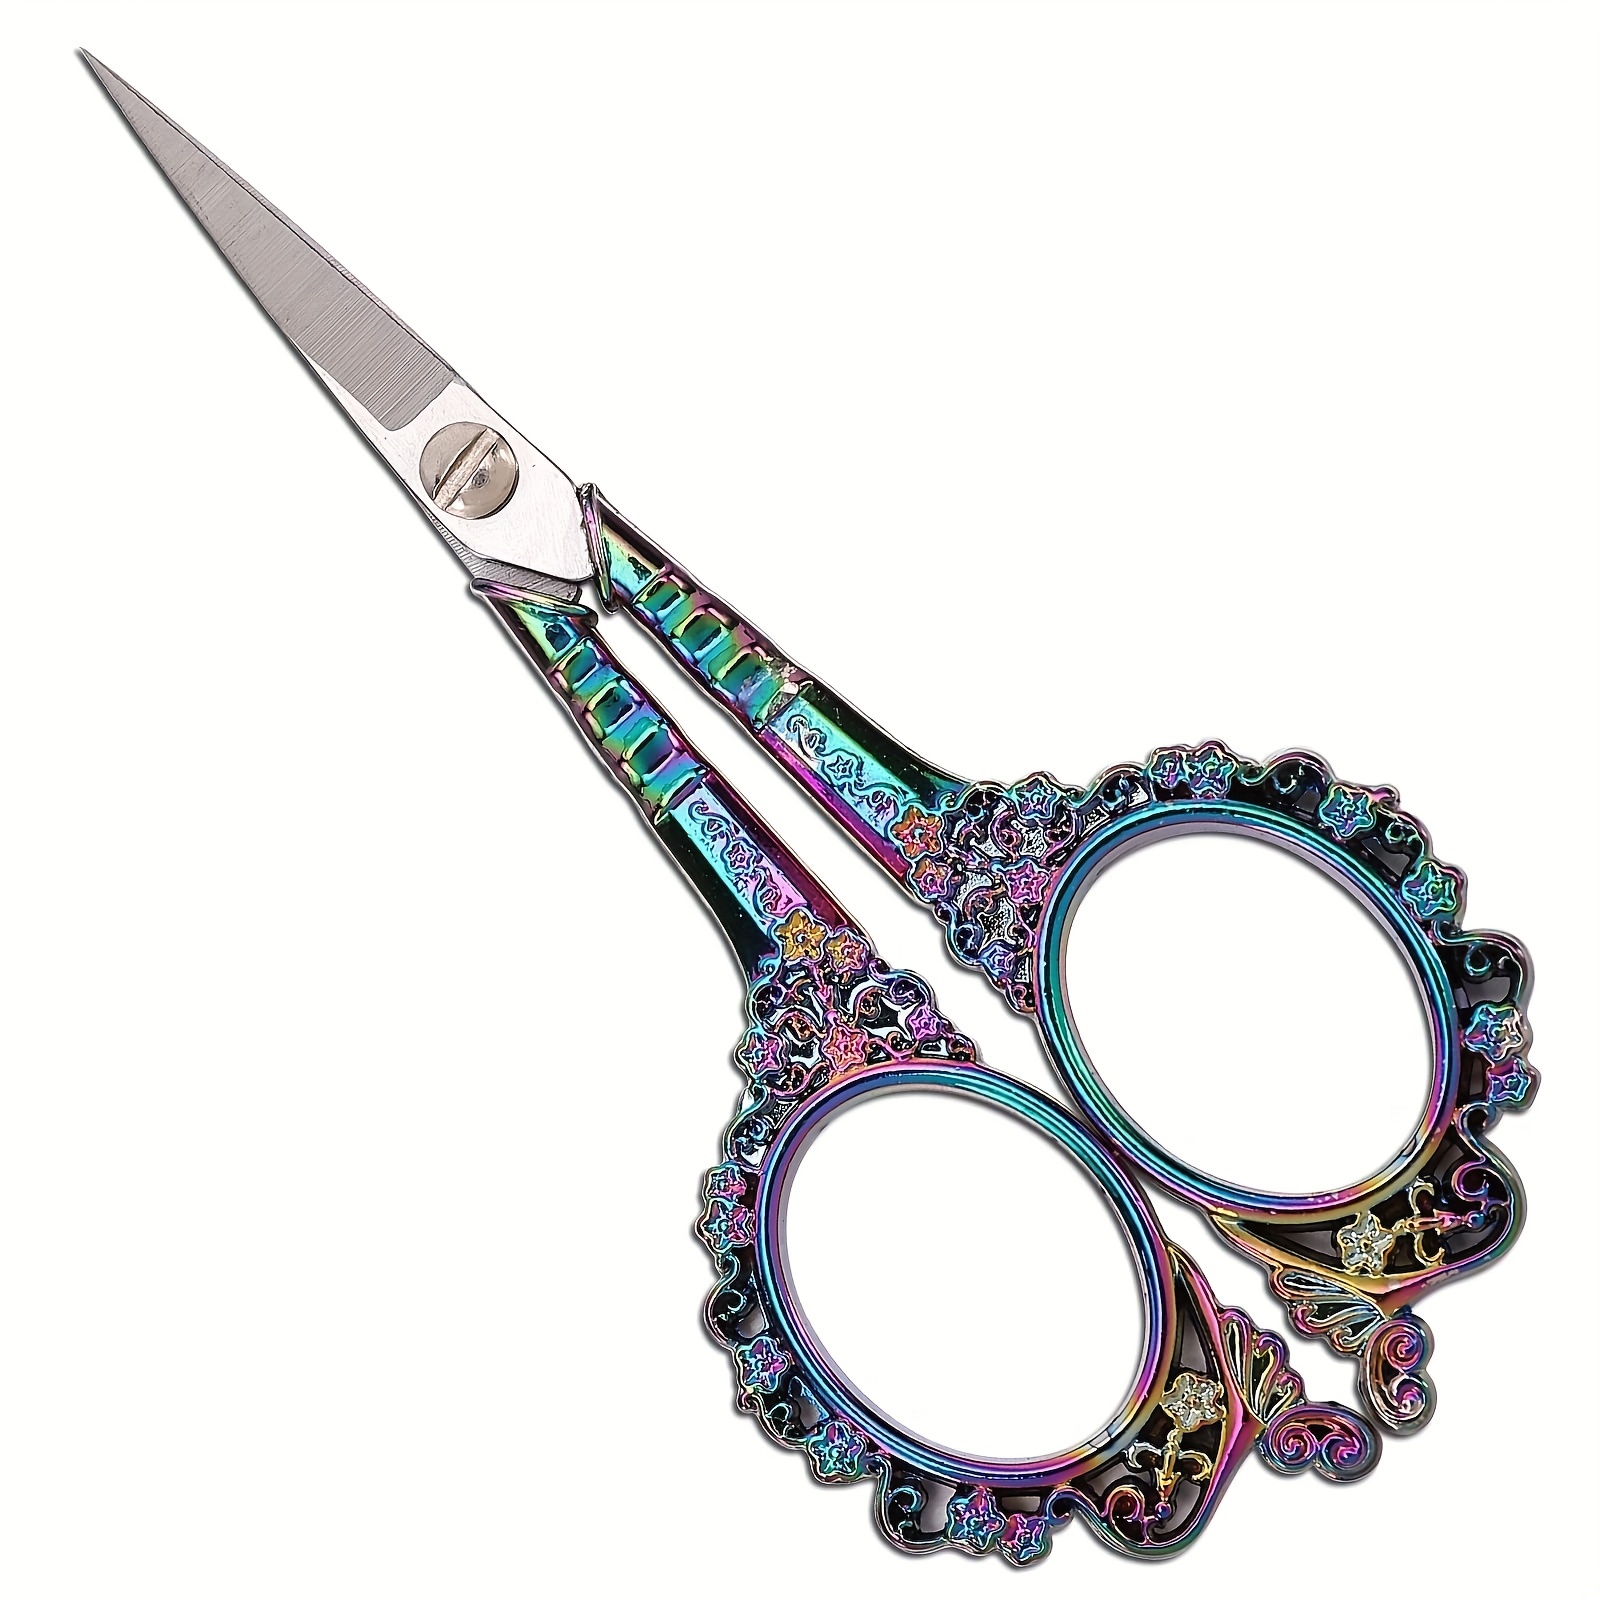 Crane Scissors, Embroidery Needlepoint Scissors, Vitange Style